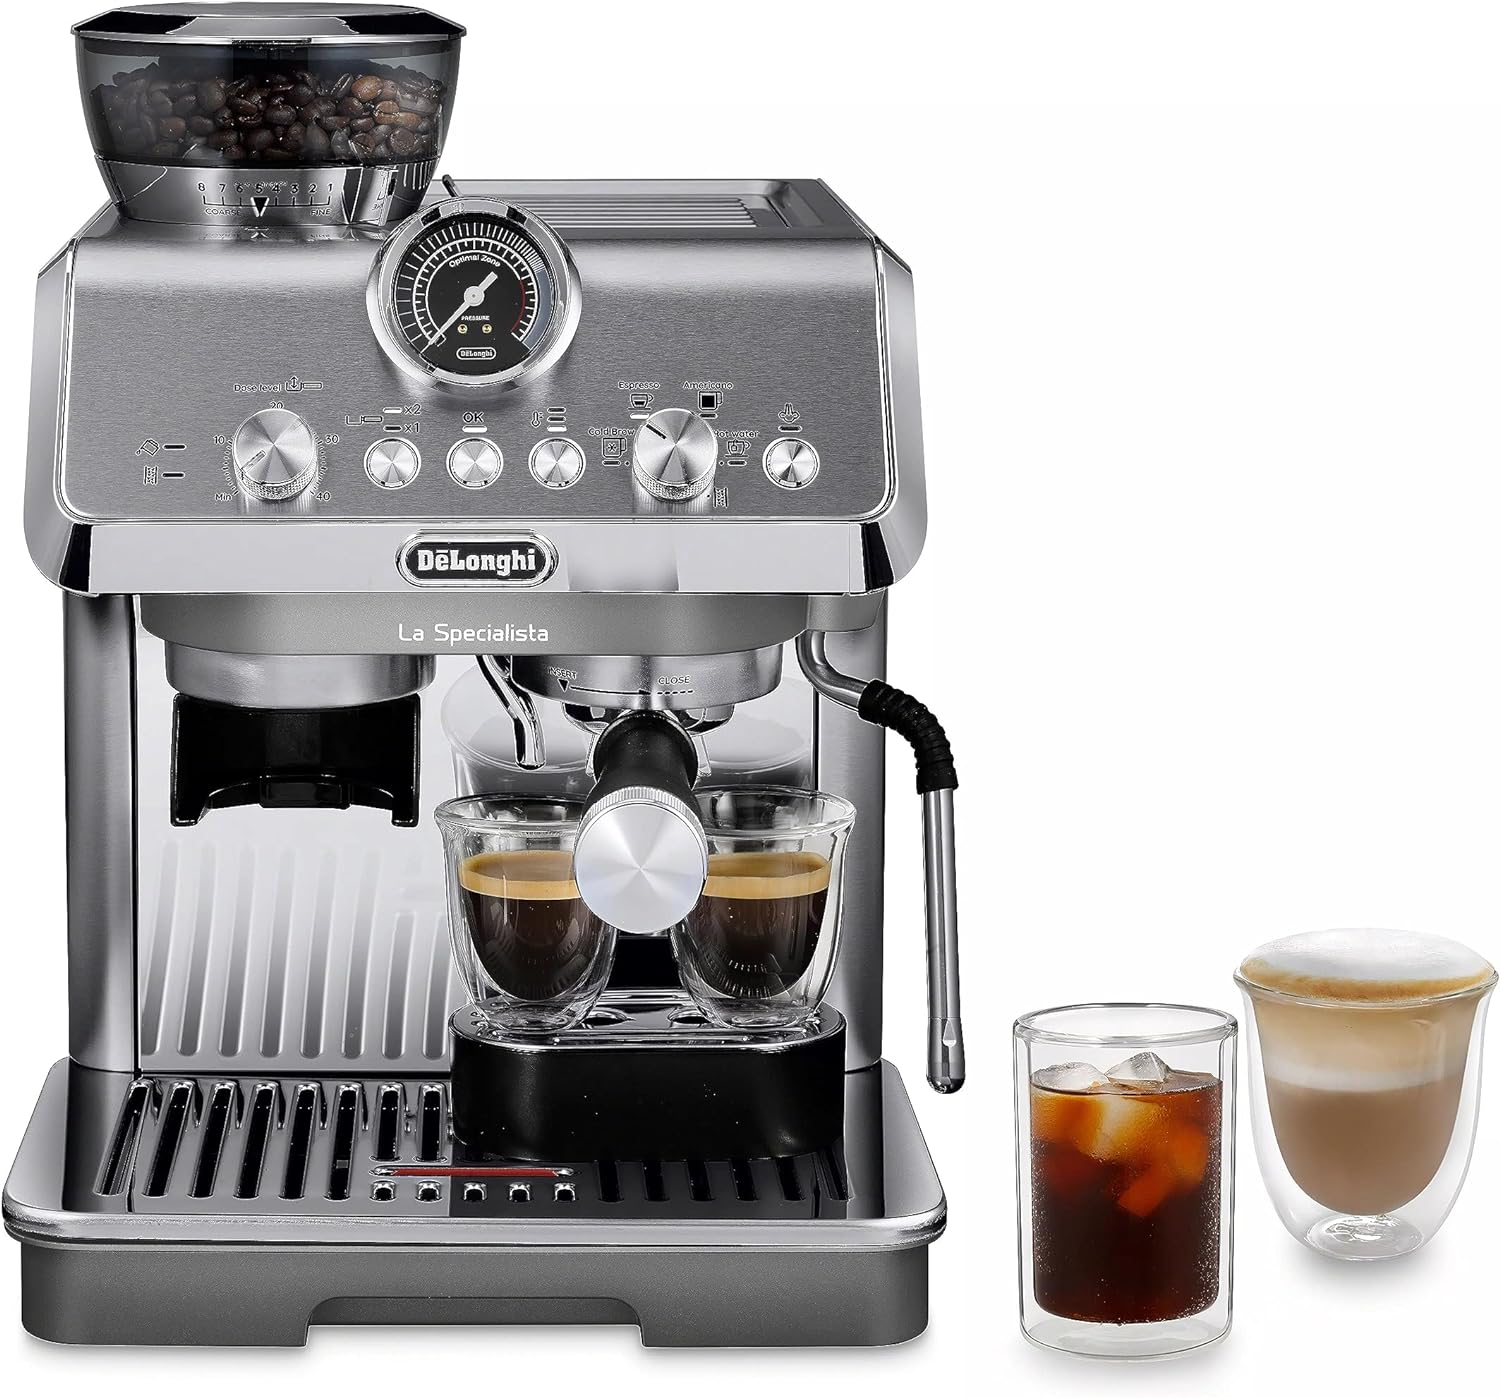 Best Espresso Machine for under 1000